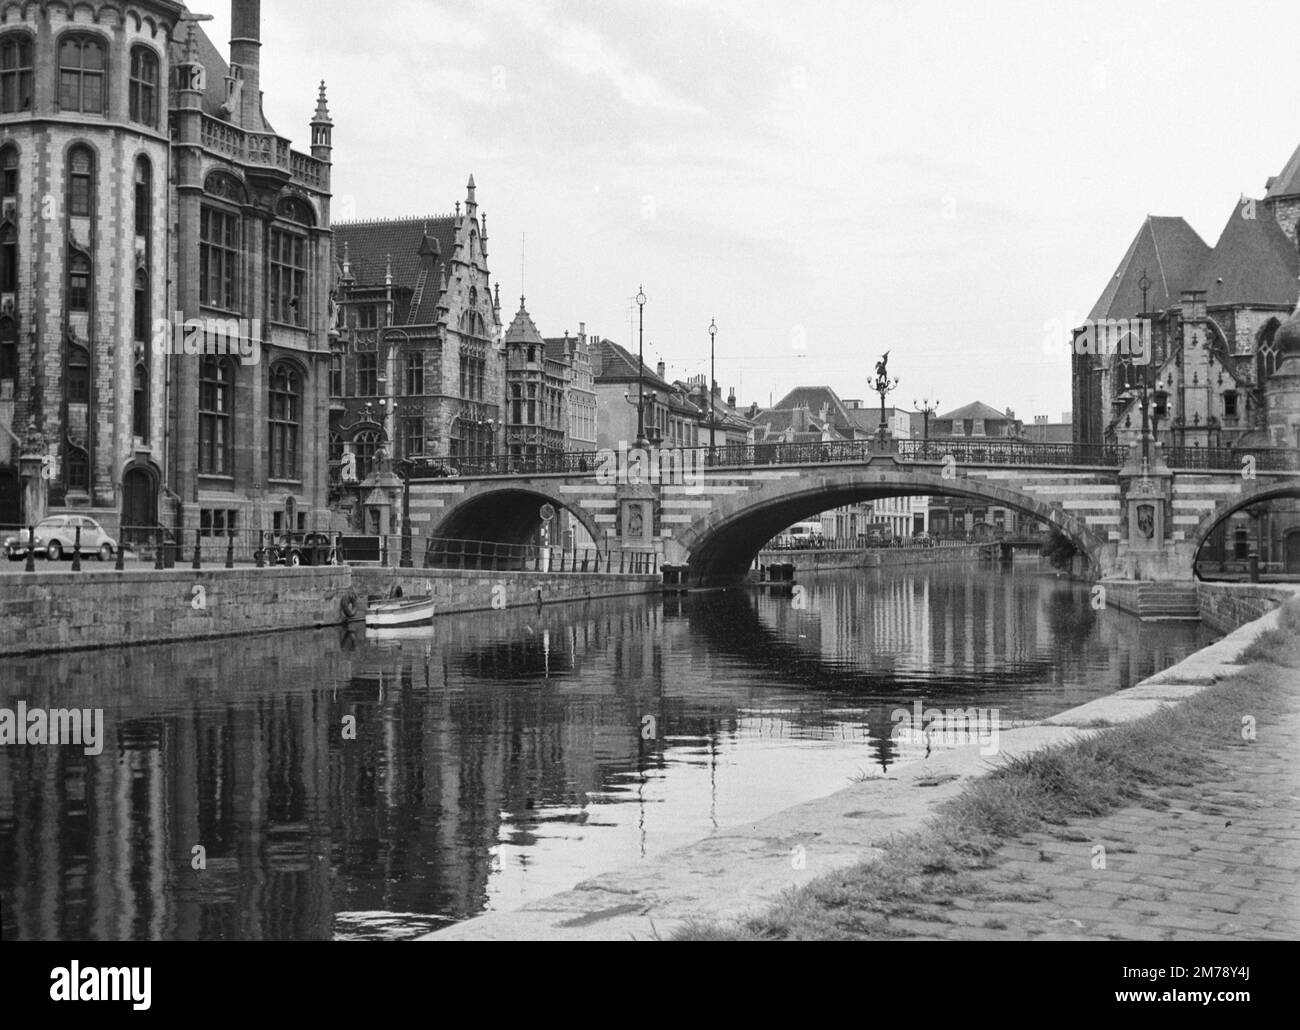 1960er Blick auf den Riverside Graslei Quay am Leie River und die mittelalterliche St. Michael's Bridge in der Altstadt oder dem historischen Viertel Gent Belgien c1960. Klassische Schwarzweiß- oder Schwarzweißfotos. Stockfoto